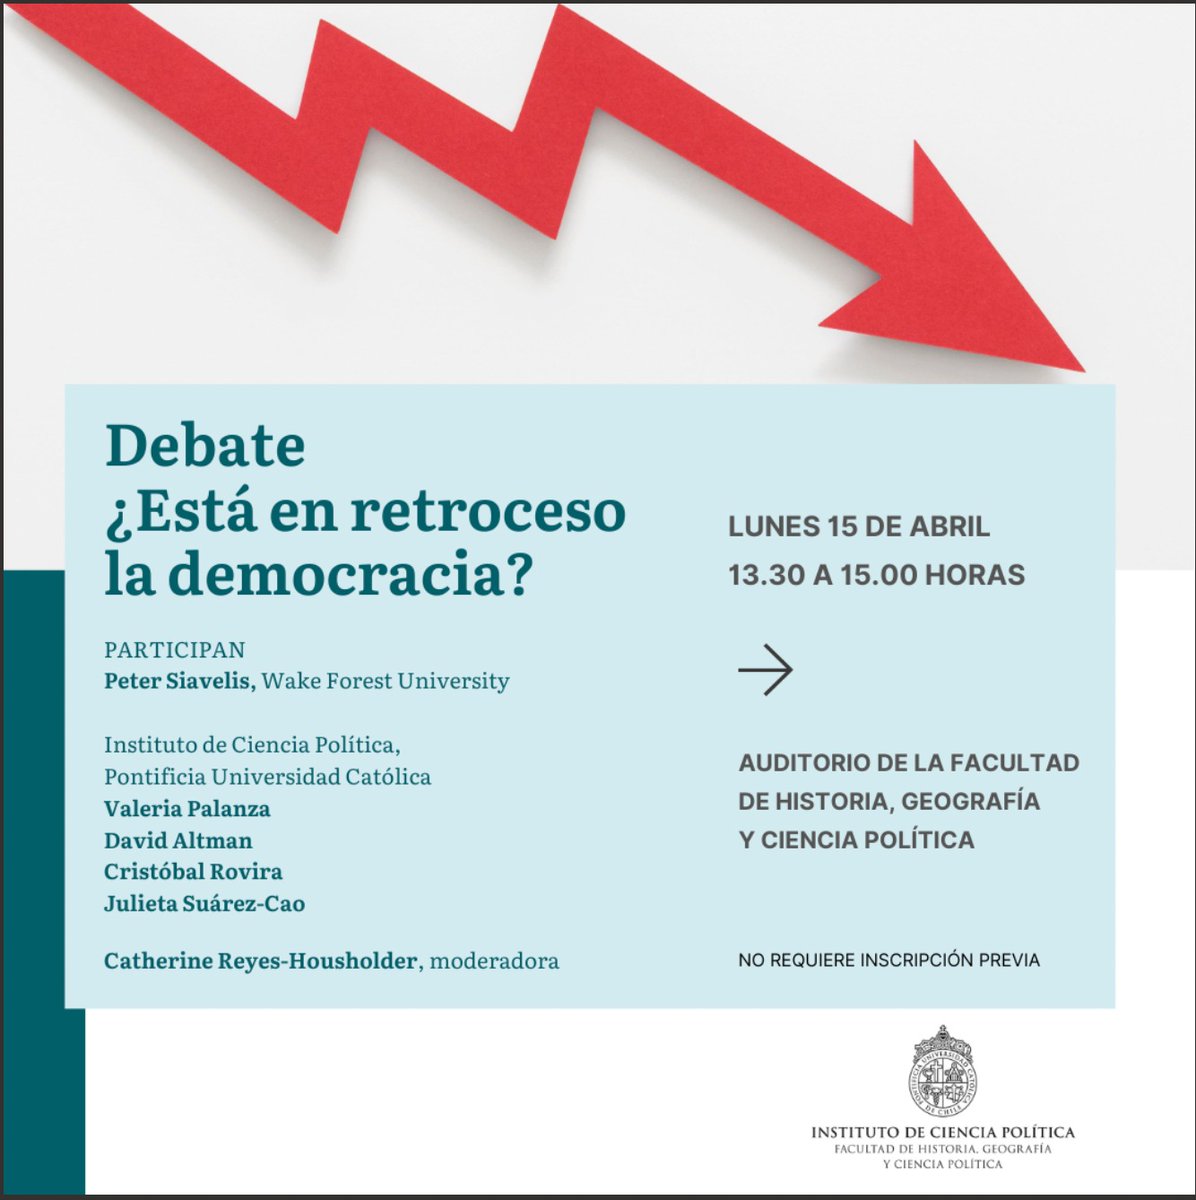 El lunes @icp_uc Debate: ¿Está en retroceso la democracia? Con @vpalanza @jujuchi @CristobalR61354, David Altman y Catherine Reyes Housholder !No se lo pierdan!